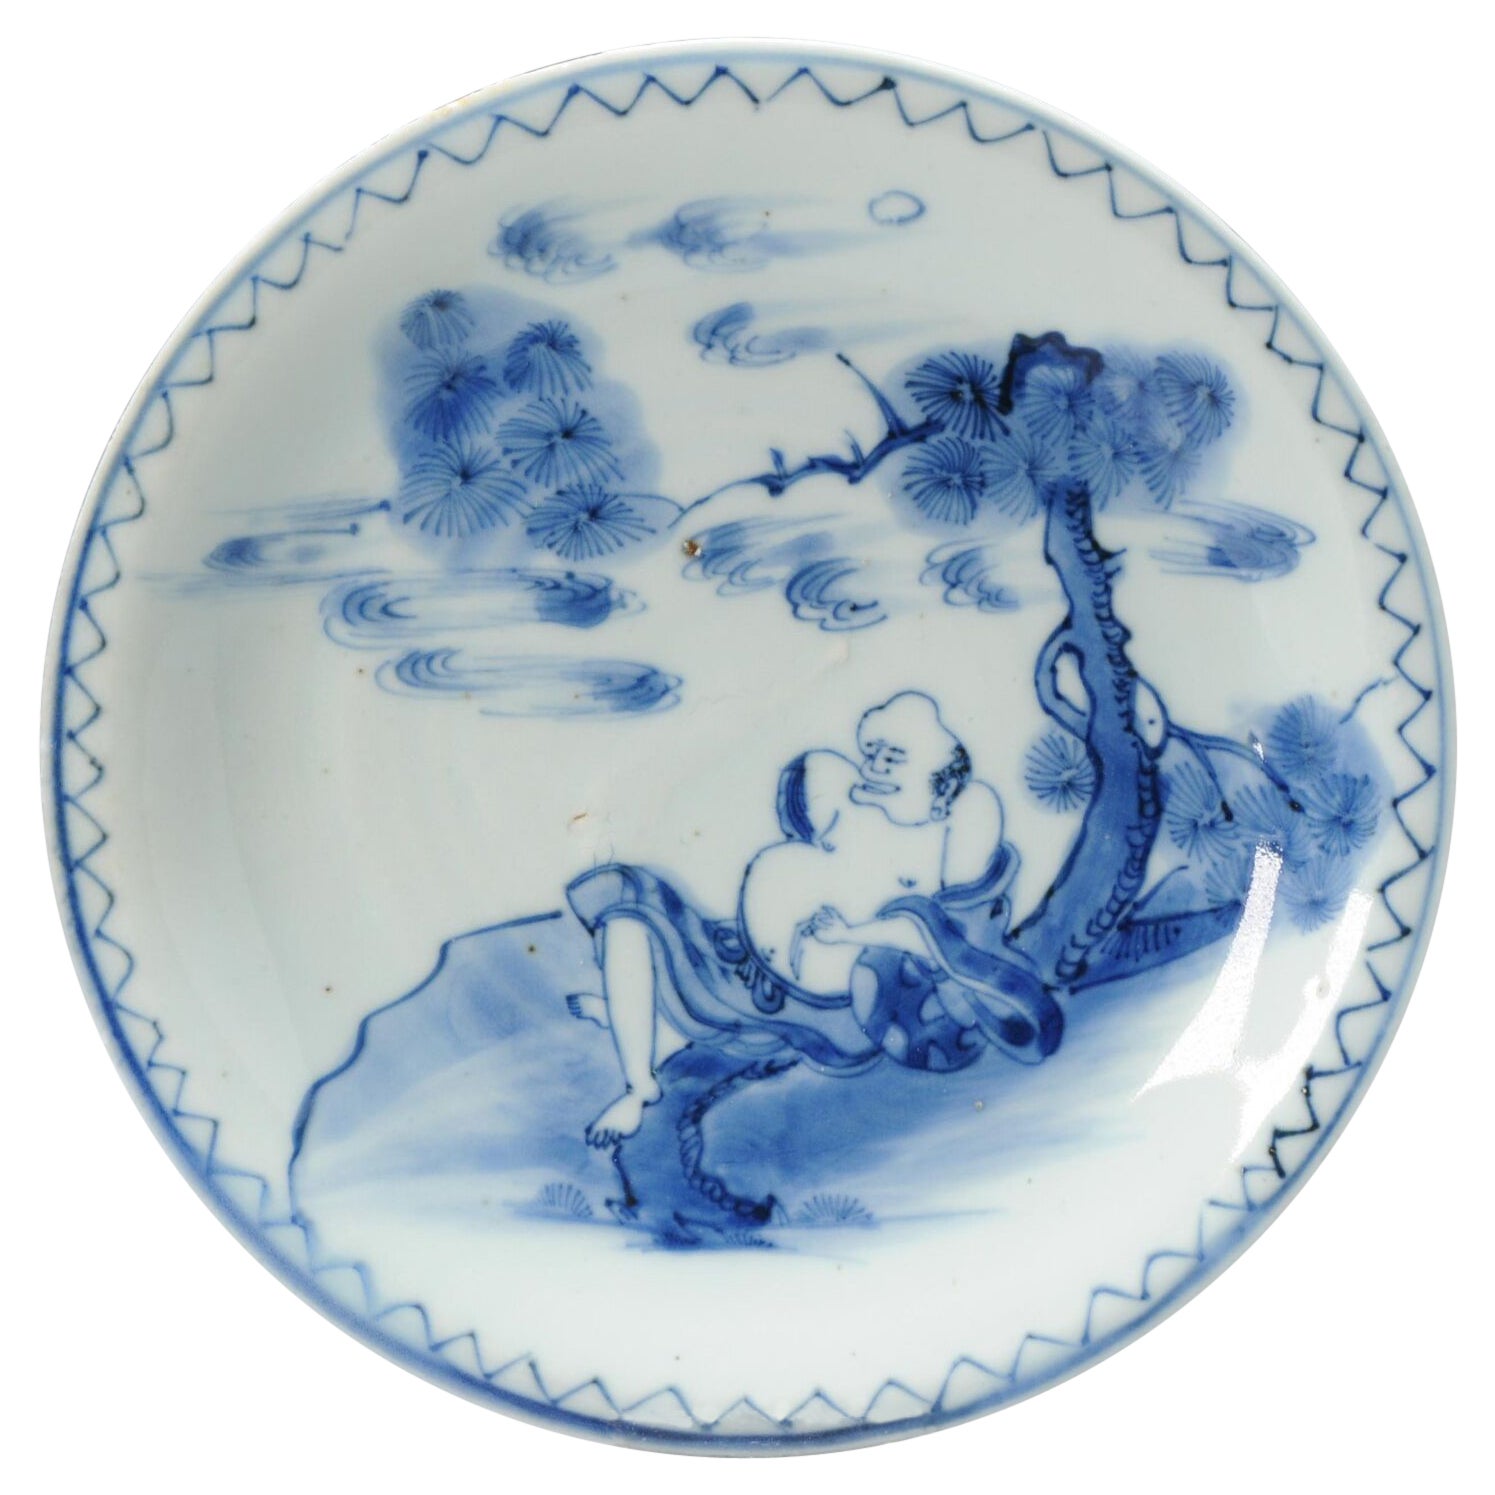 Rare assiette Kosometsuke en porcelaine chinoise de la période Ming, vers 1600-1640